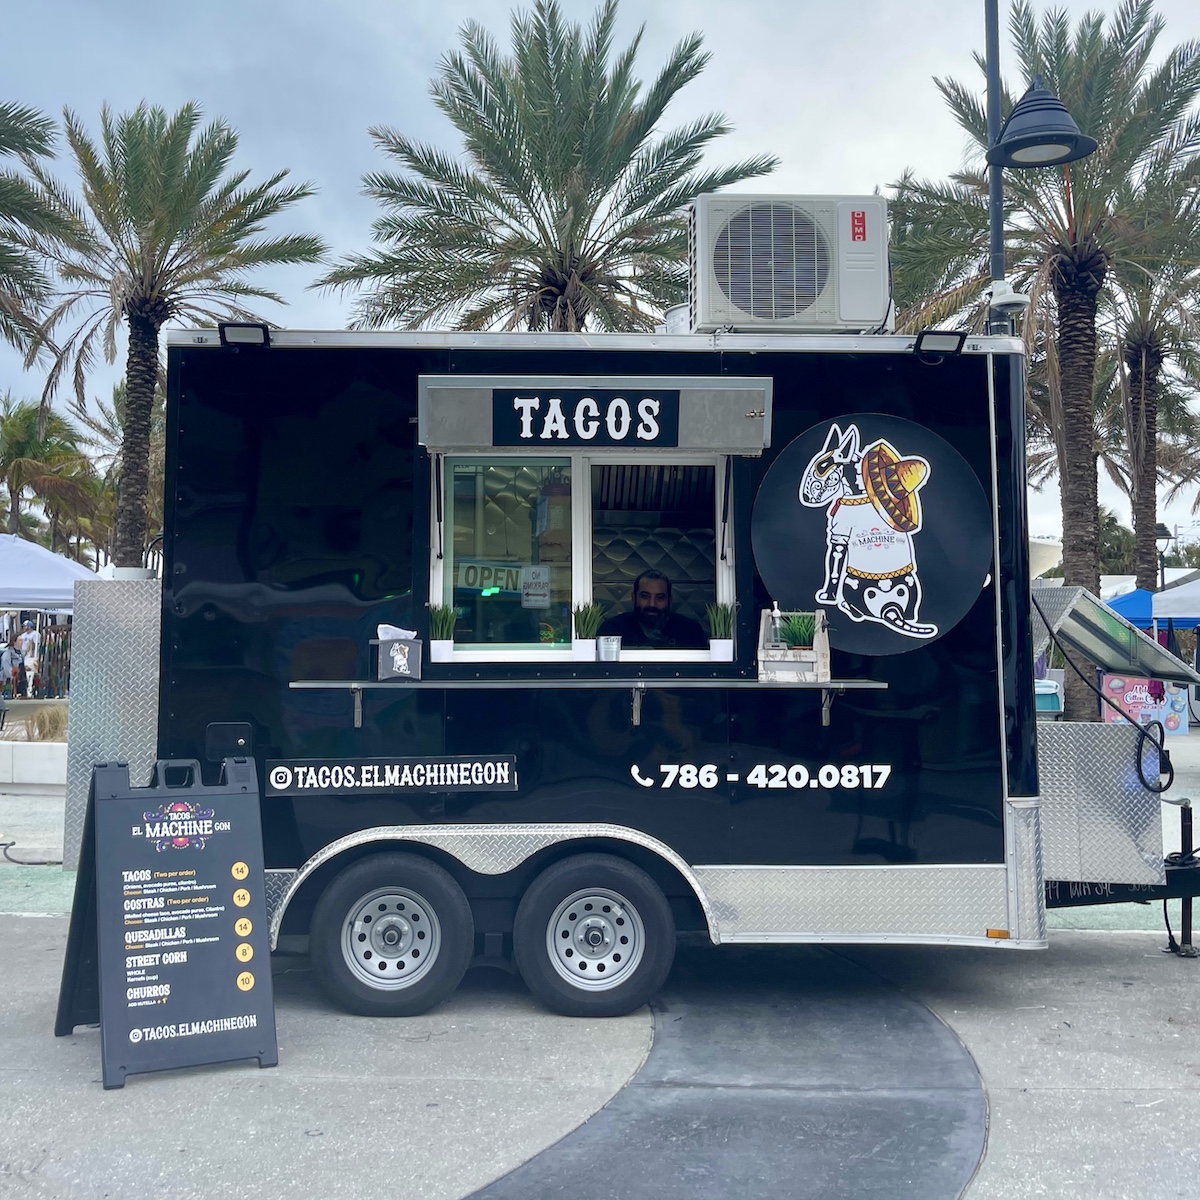 Tacos El Machine Gon Food Trailer